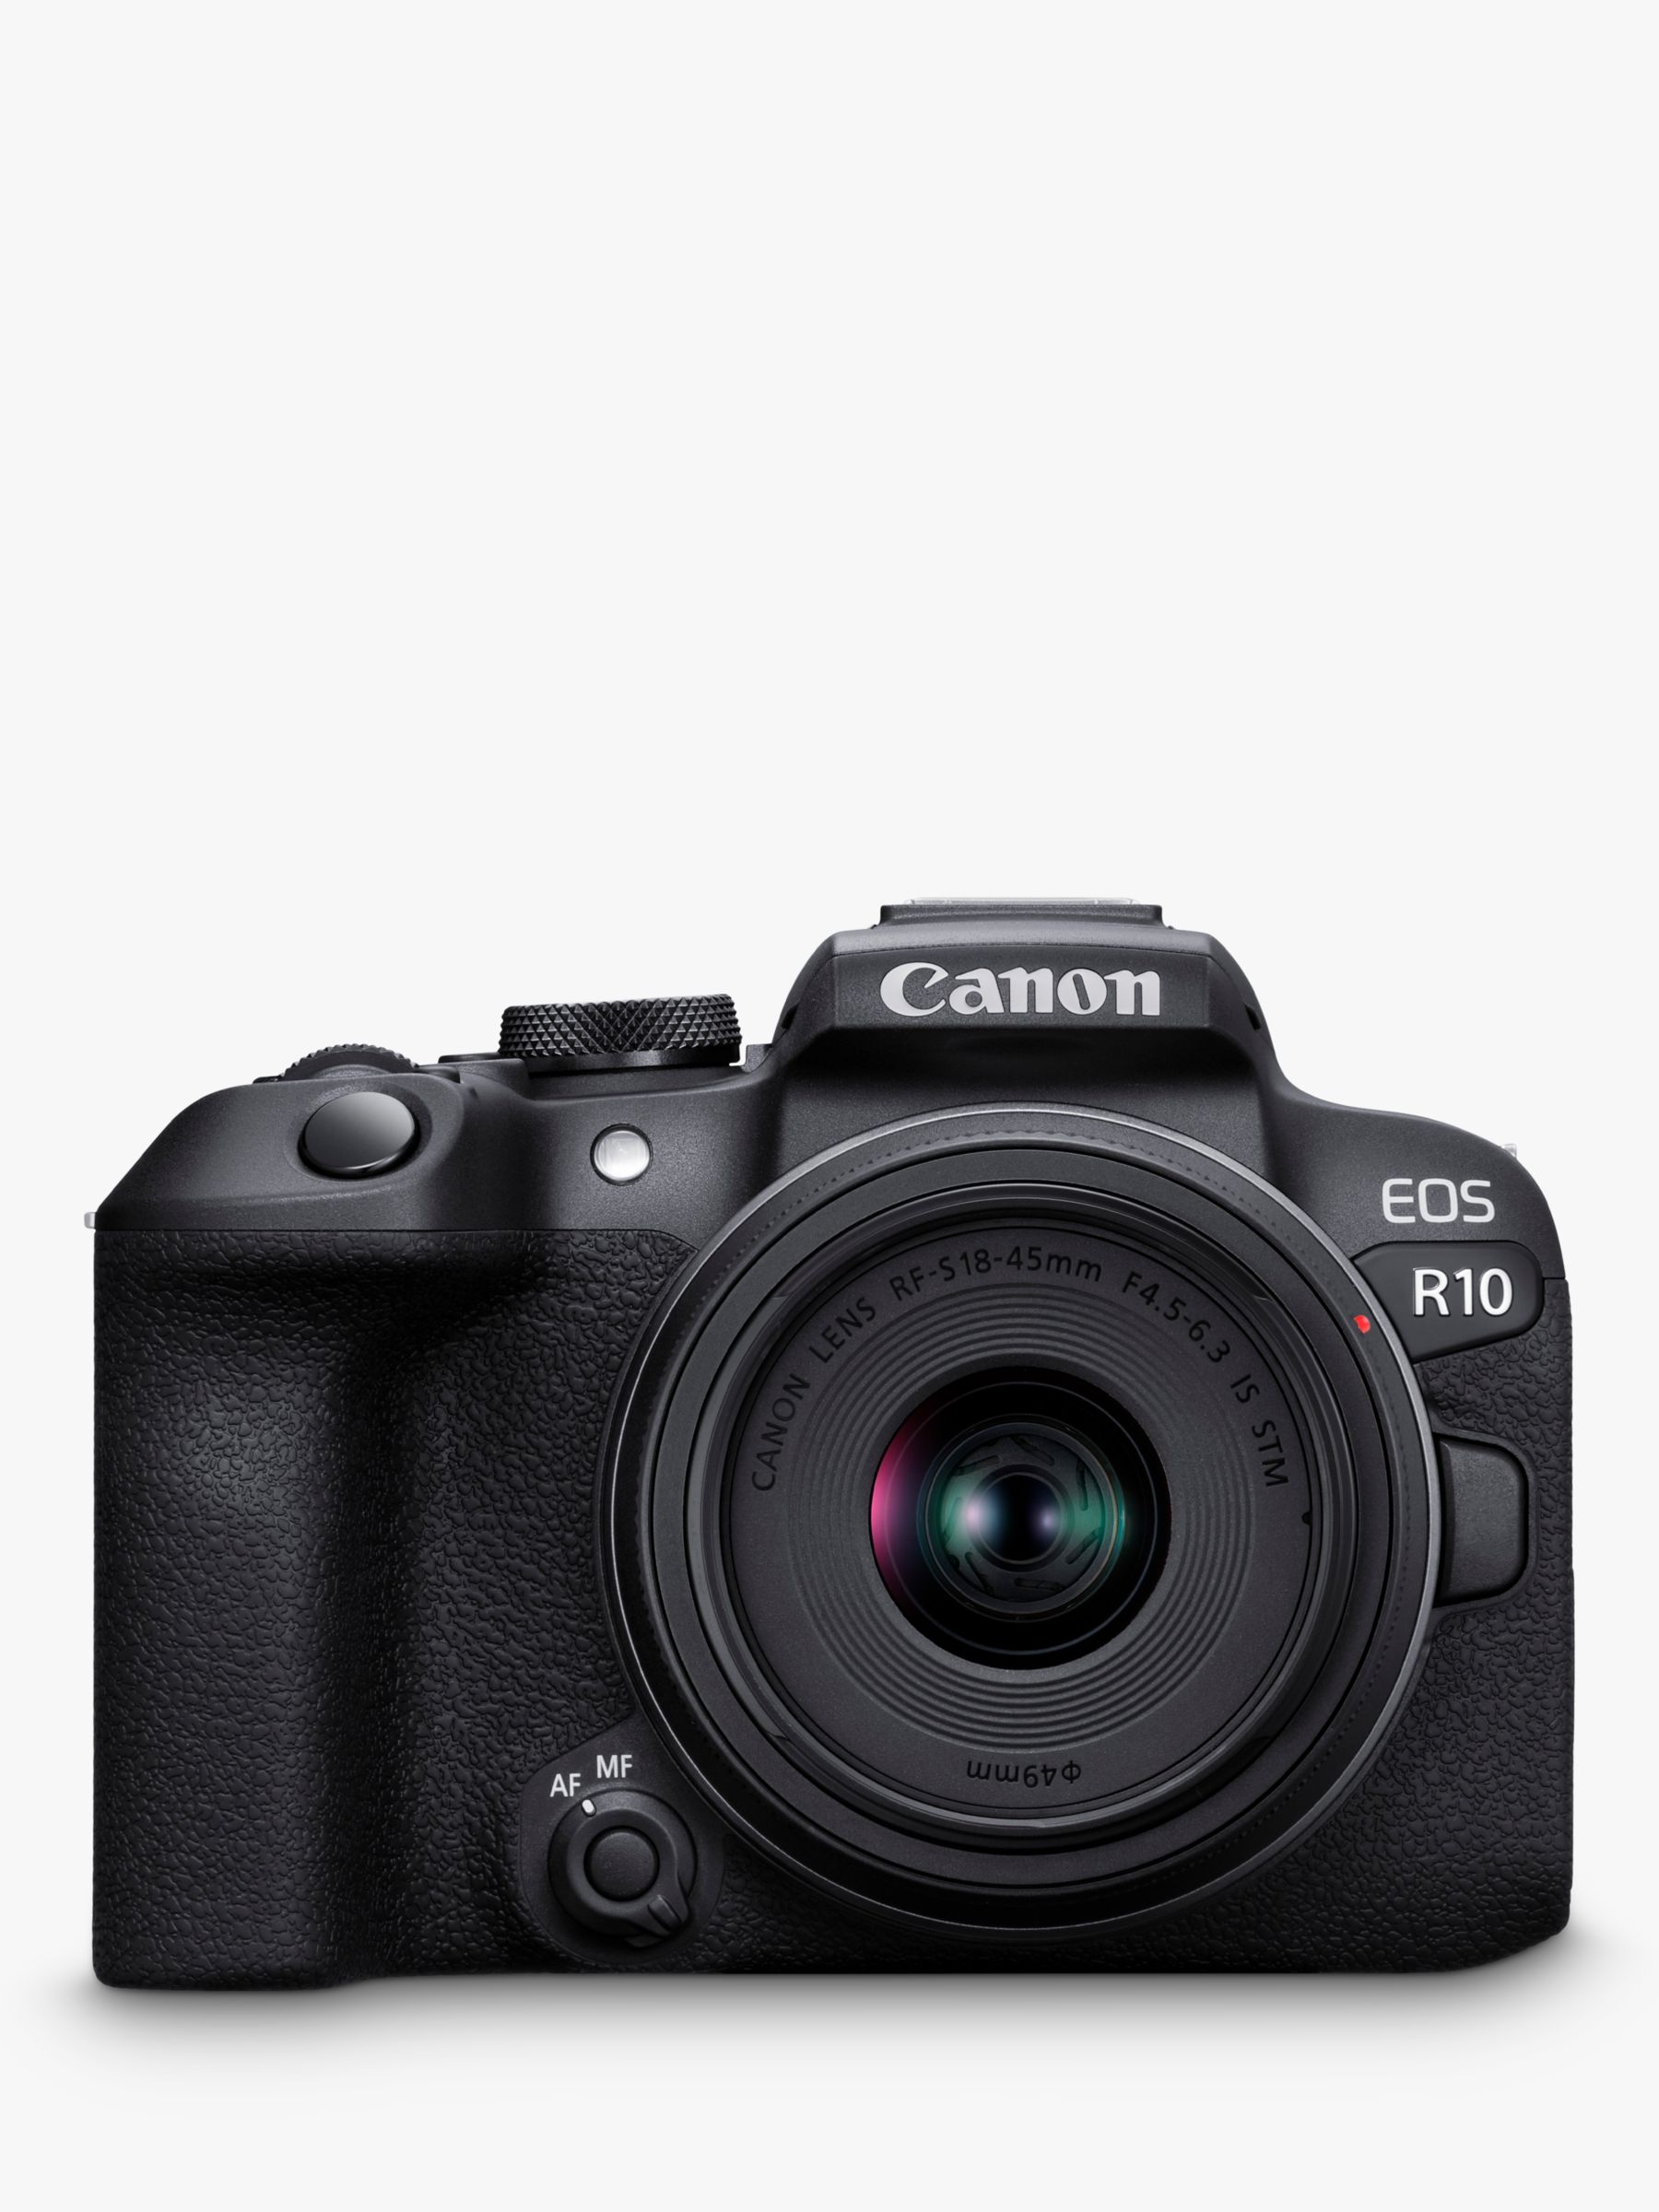 Cámara Digital Canon Mirrorless Eos R50 18-45mm 24,2mp 4k - Pc